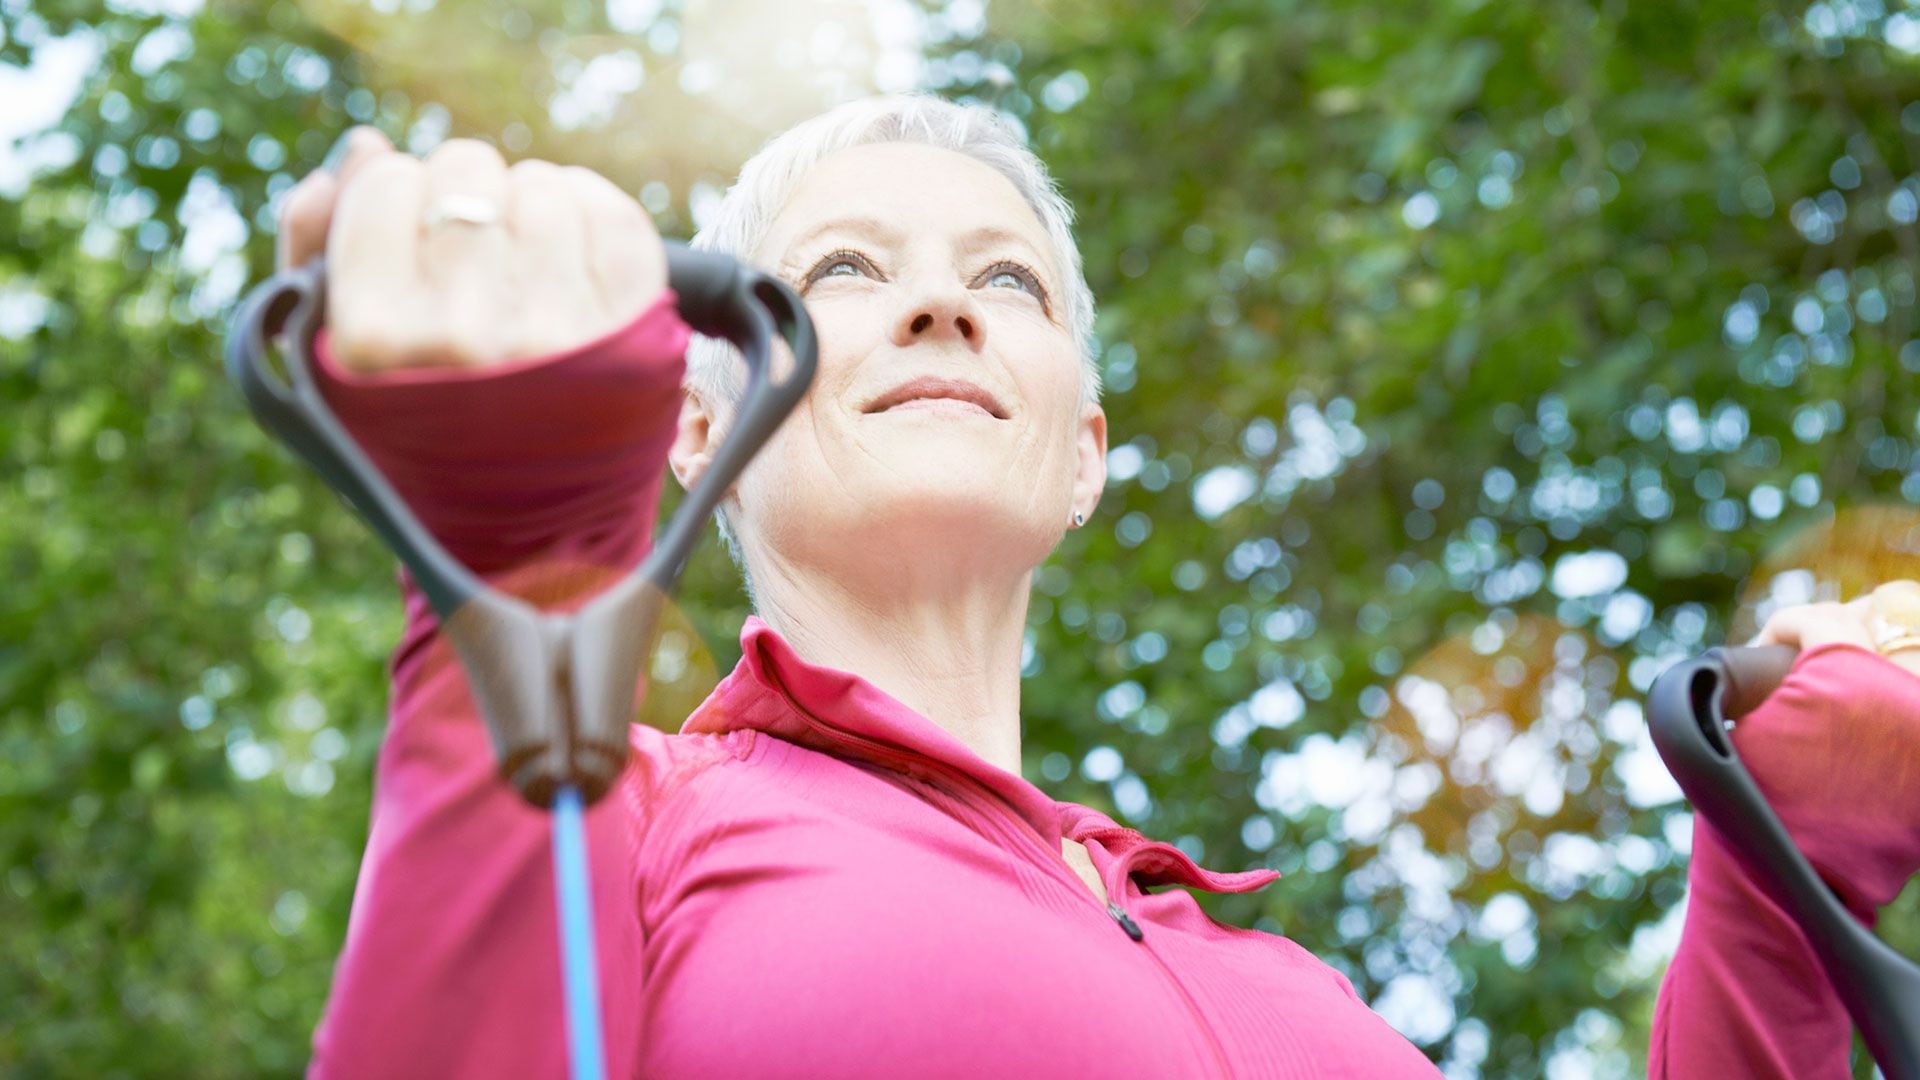 Realizar actividad física al aire libre ayuda a disminuir los síntomas de astenia primaveral (Getty)